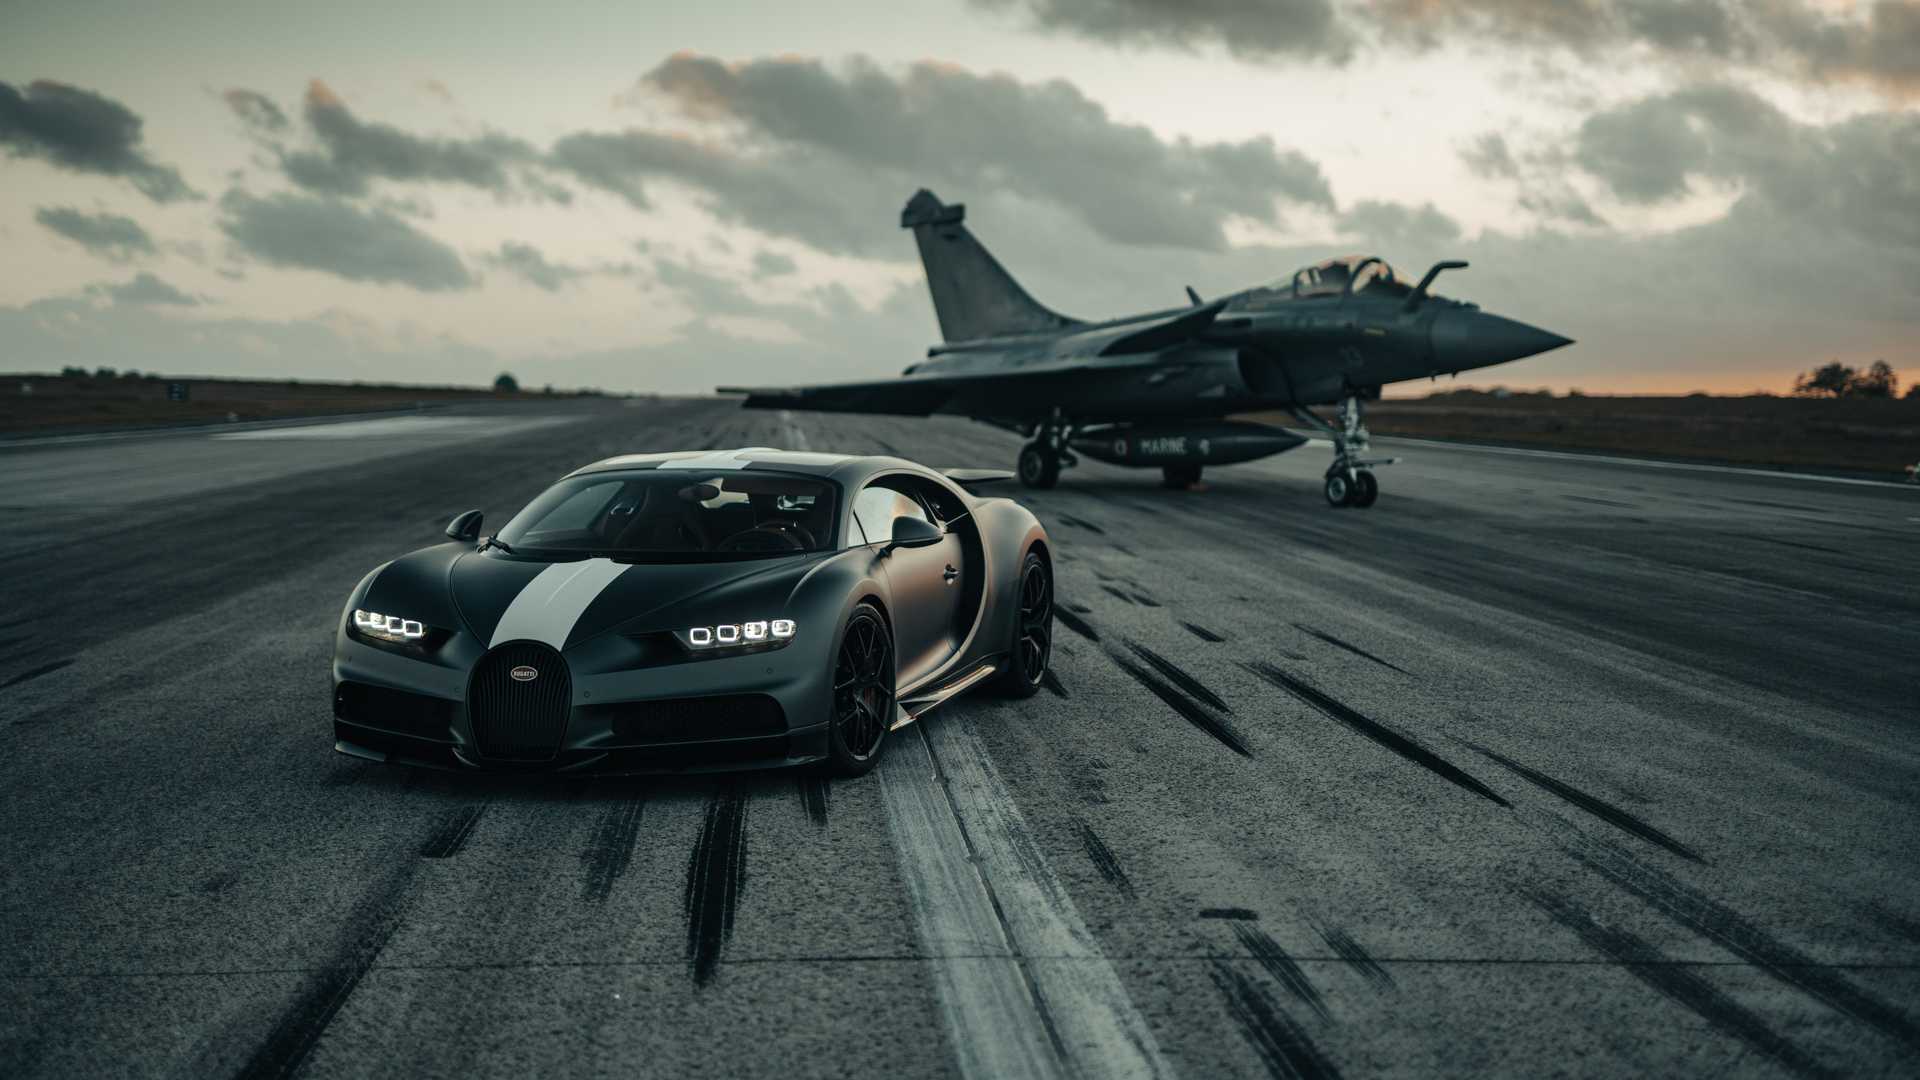 Siêu xe Bugatti Veyron là một trong những chiếc siêu xe đắt giá và đẳng cấp nhất thế giới. Những đường nét và công nghệ tiên tiến của chiếc xe này sẽ khiến bạn không thể rời mắt khỏi bức ảnh.